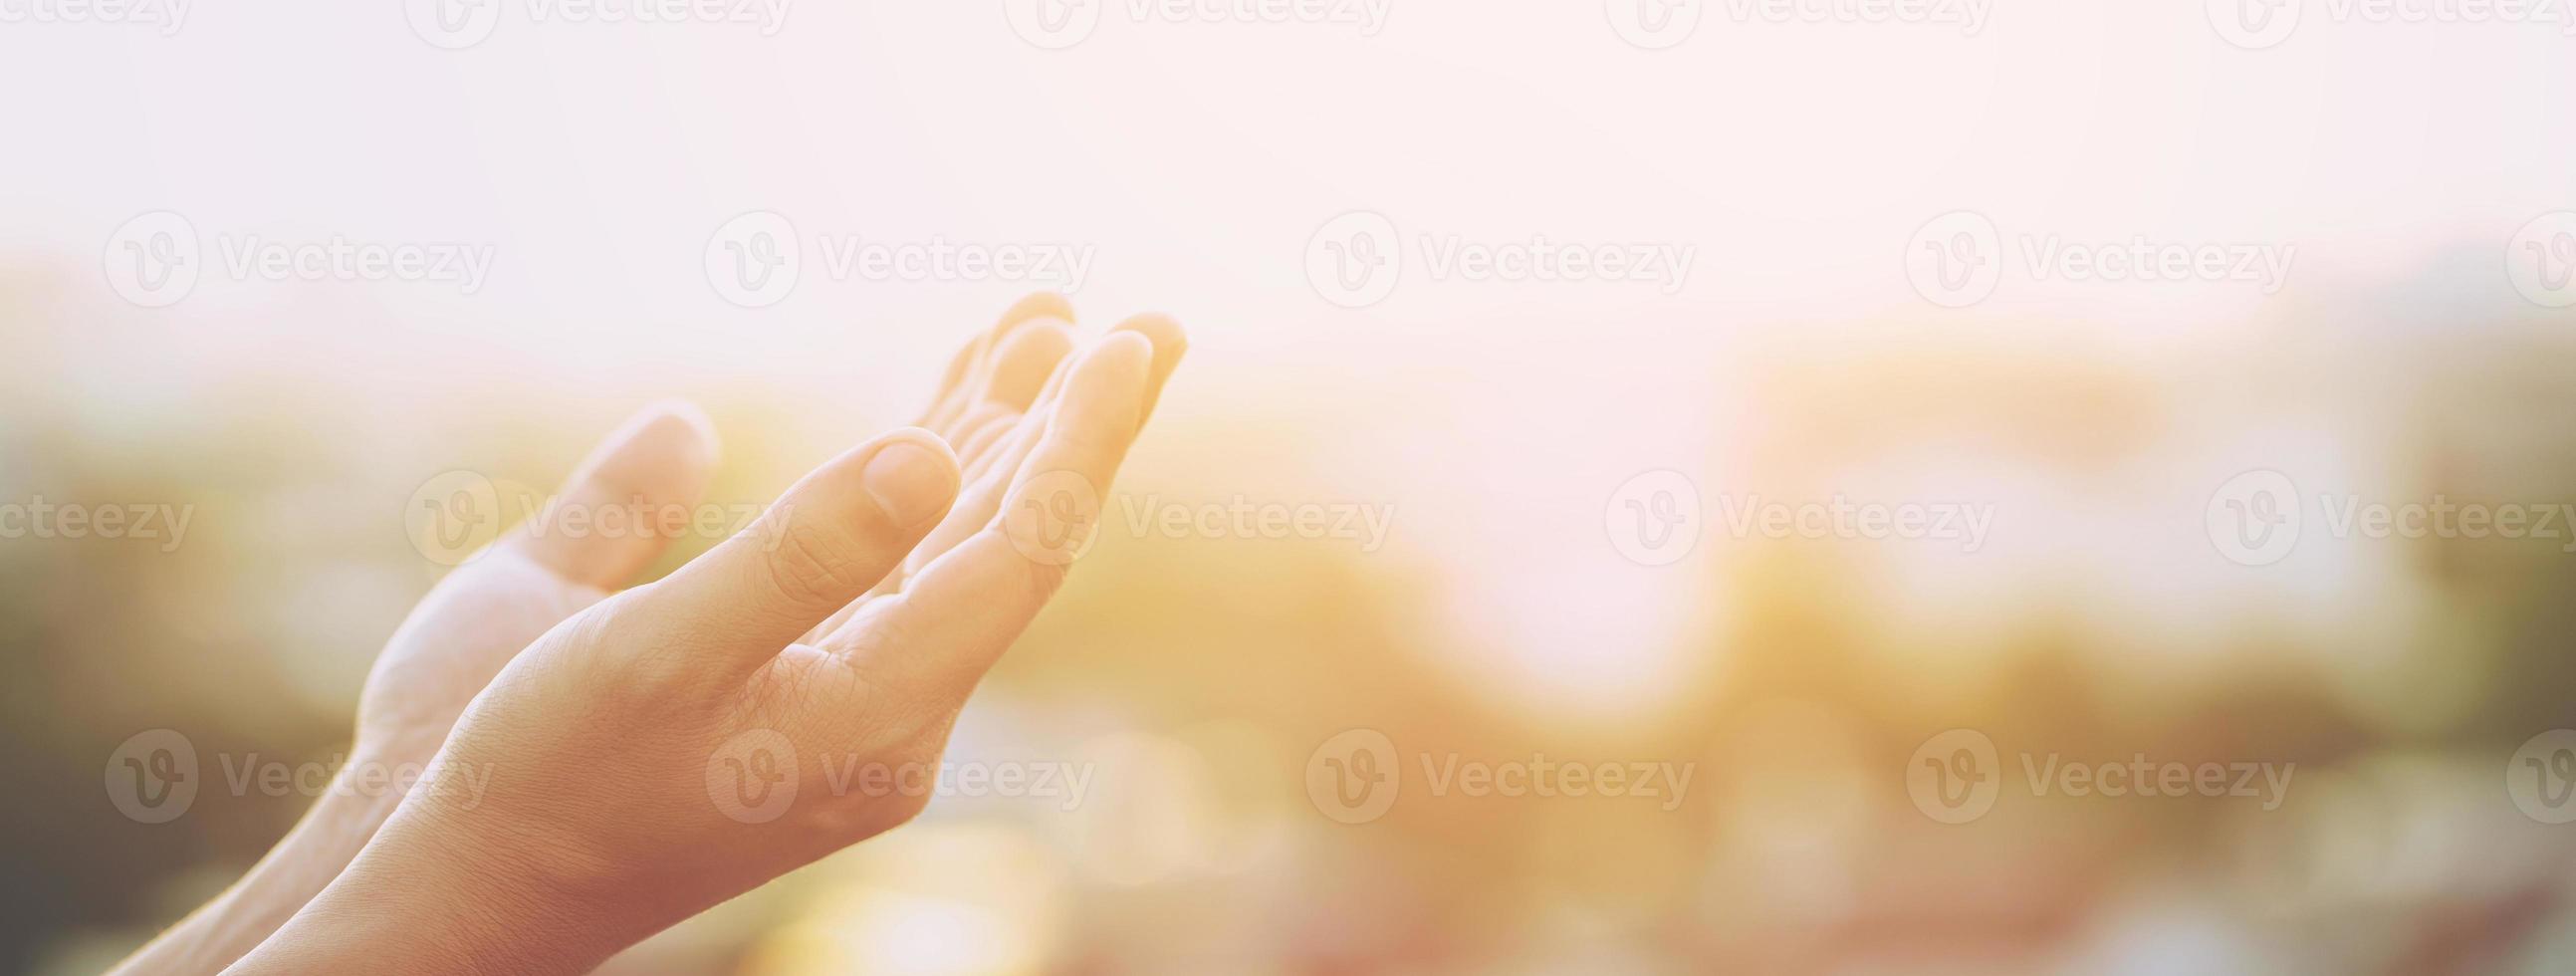 bidden Mens hopen voor beter. vragen god voor mooi zo geluk, succes, macht van geloof, geloof, aanbidding. Holding hand- in gebed hebben zetten samen, concept geloof spiritualiteit. of begroeten Hallo. foto